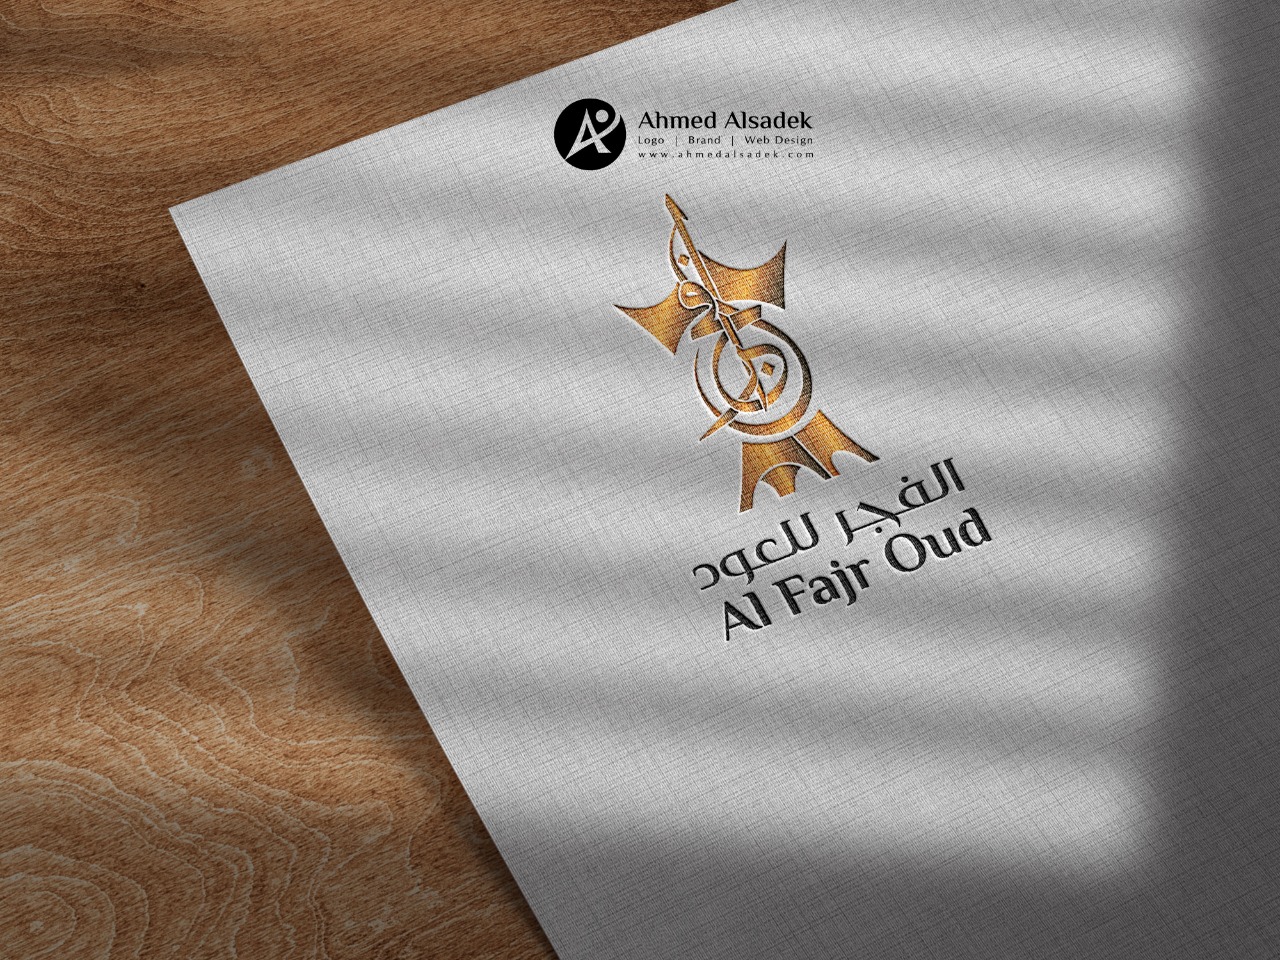 تصميم شعار شركة الفجر للعود سلطنة عمان 7